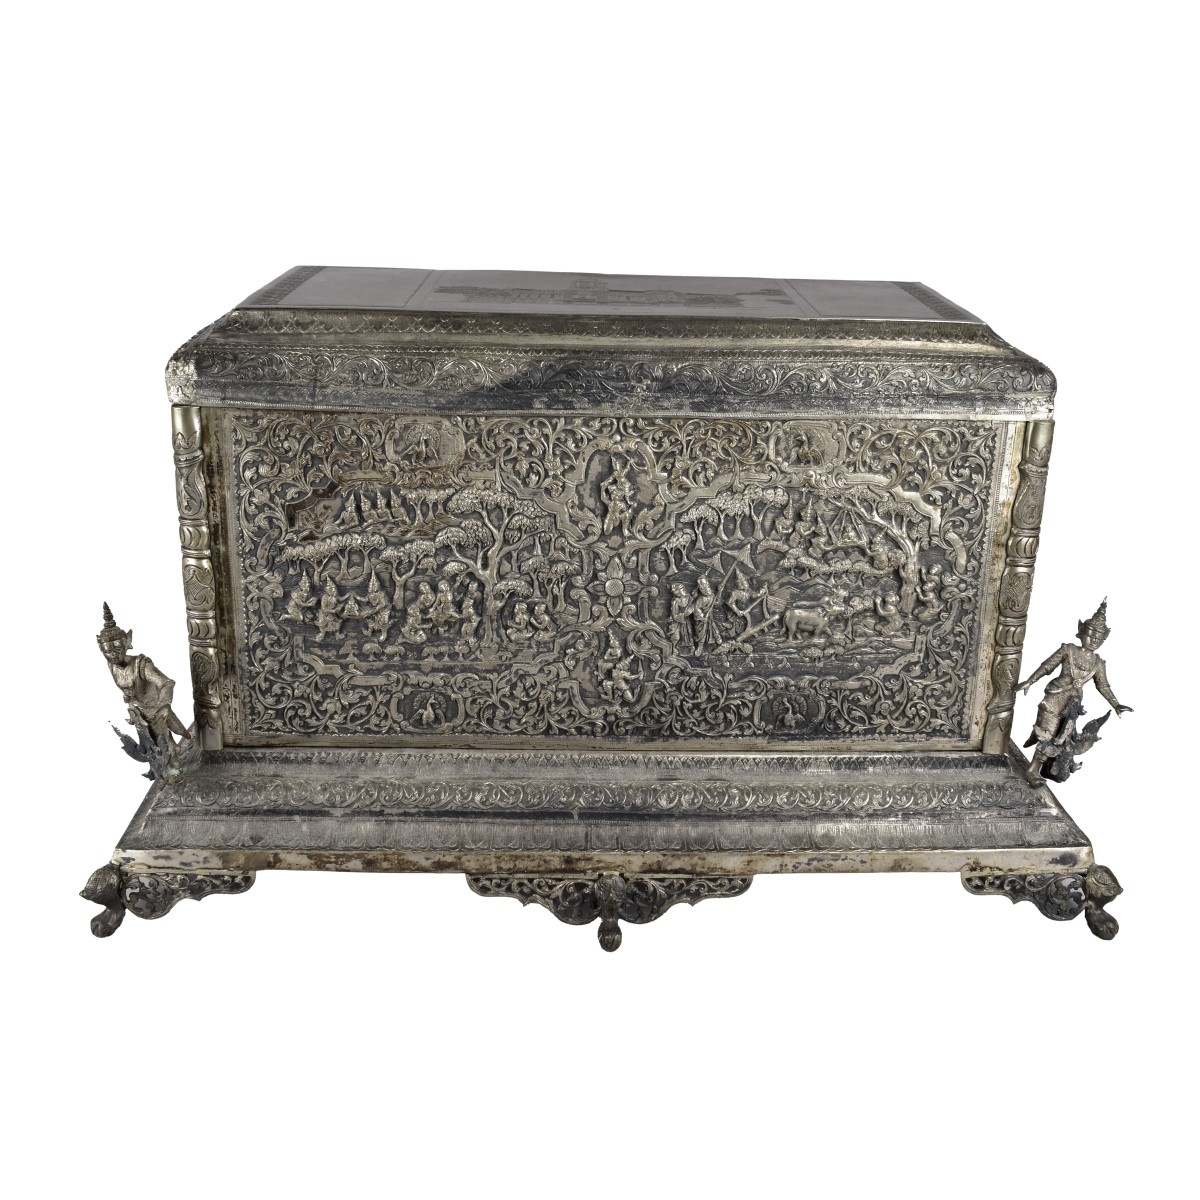 Antique Burmese Silver Box